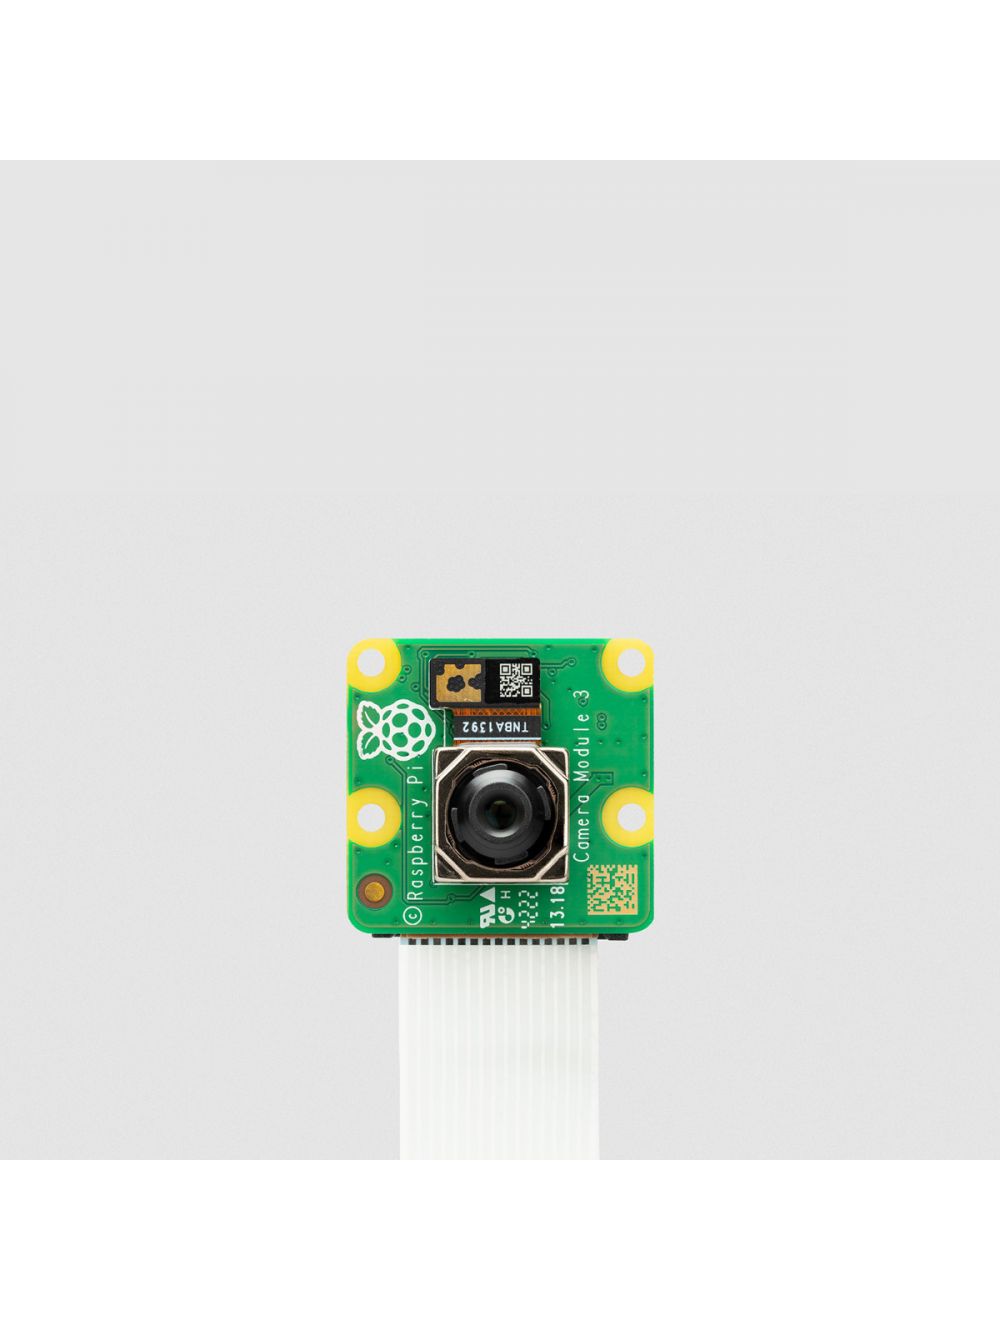 オンラインストア銀座 Raspberry Pi Model B 2GB カメラモジュール